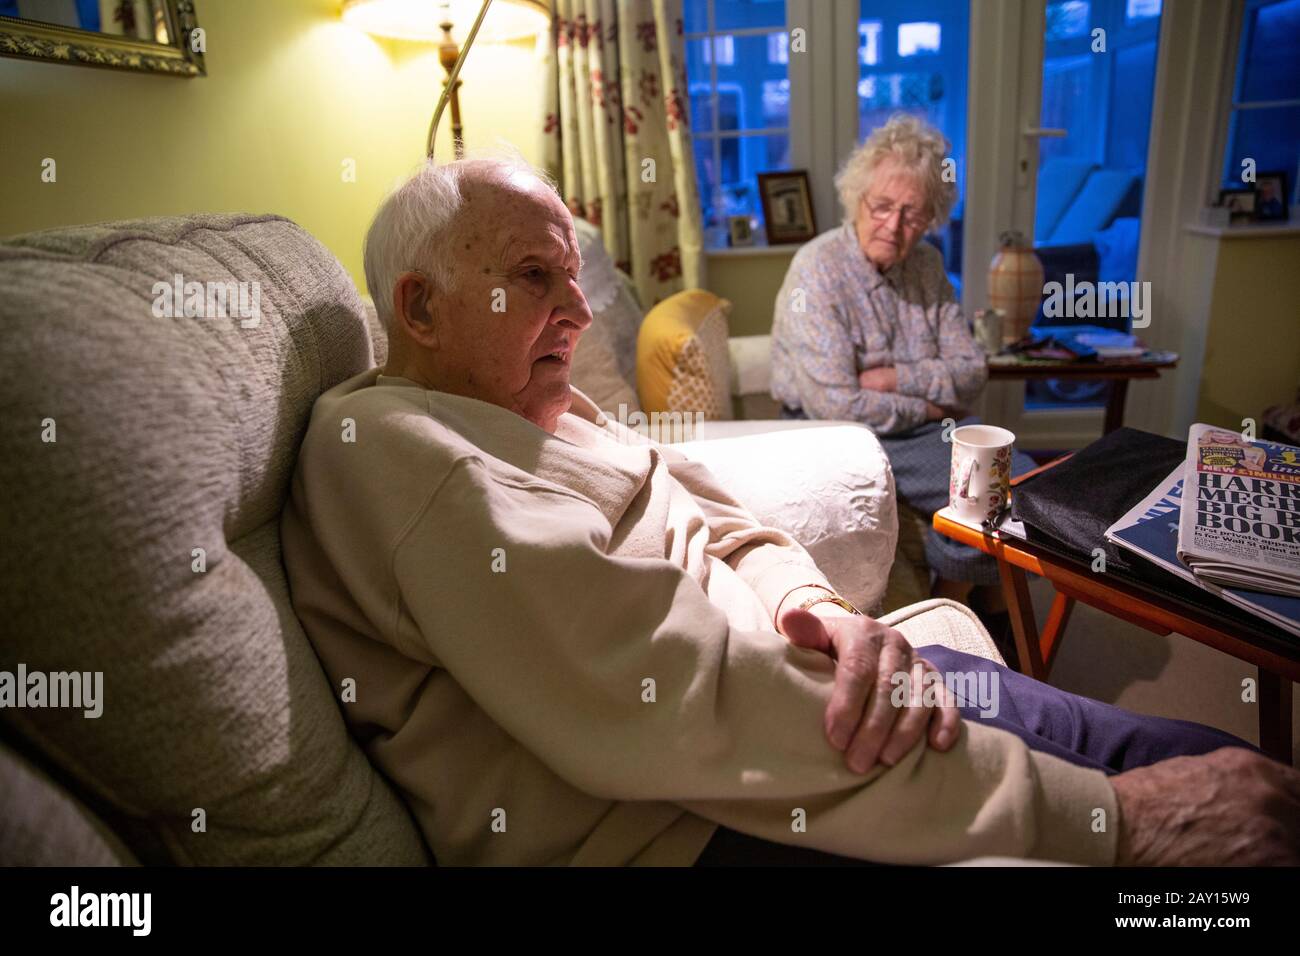 Los jubilados casados de la vejez ambos en sus años 80 que viven juntos en sus años del crepúsculo, Inglaterra, Reino Unido Foto de stock